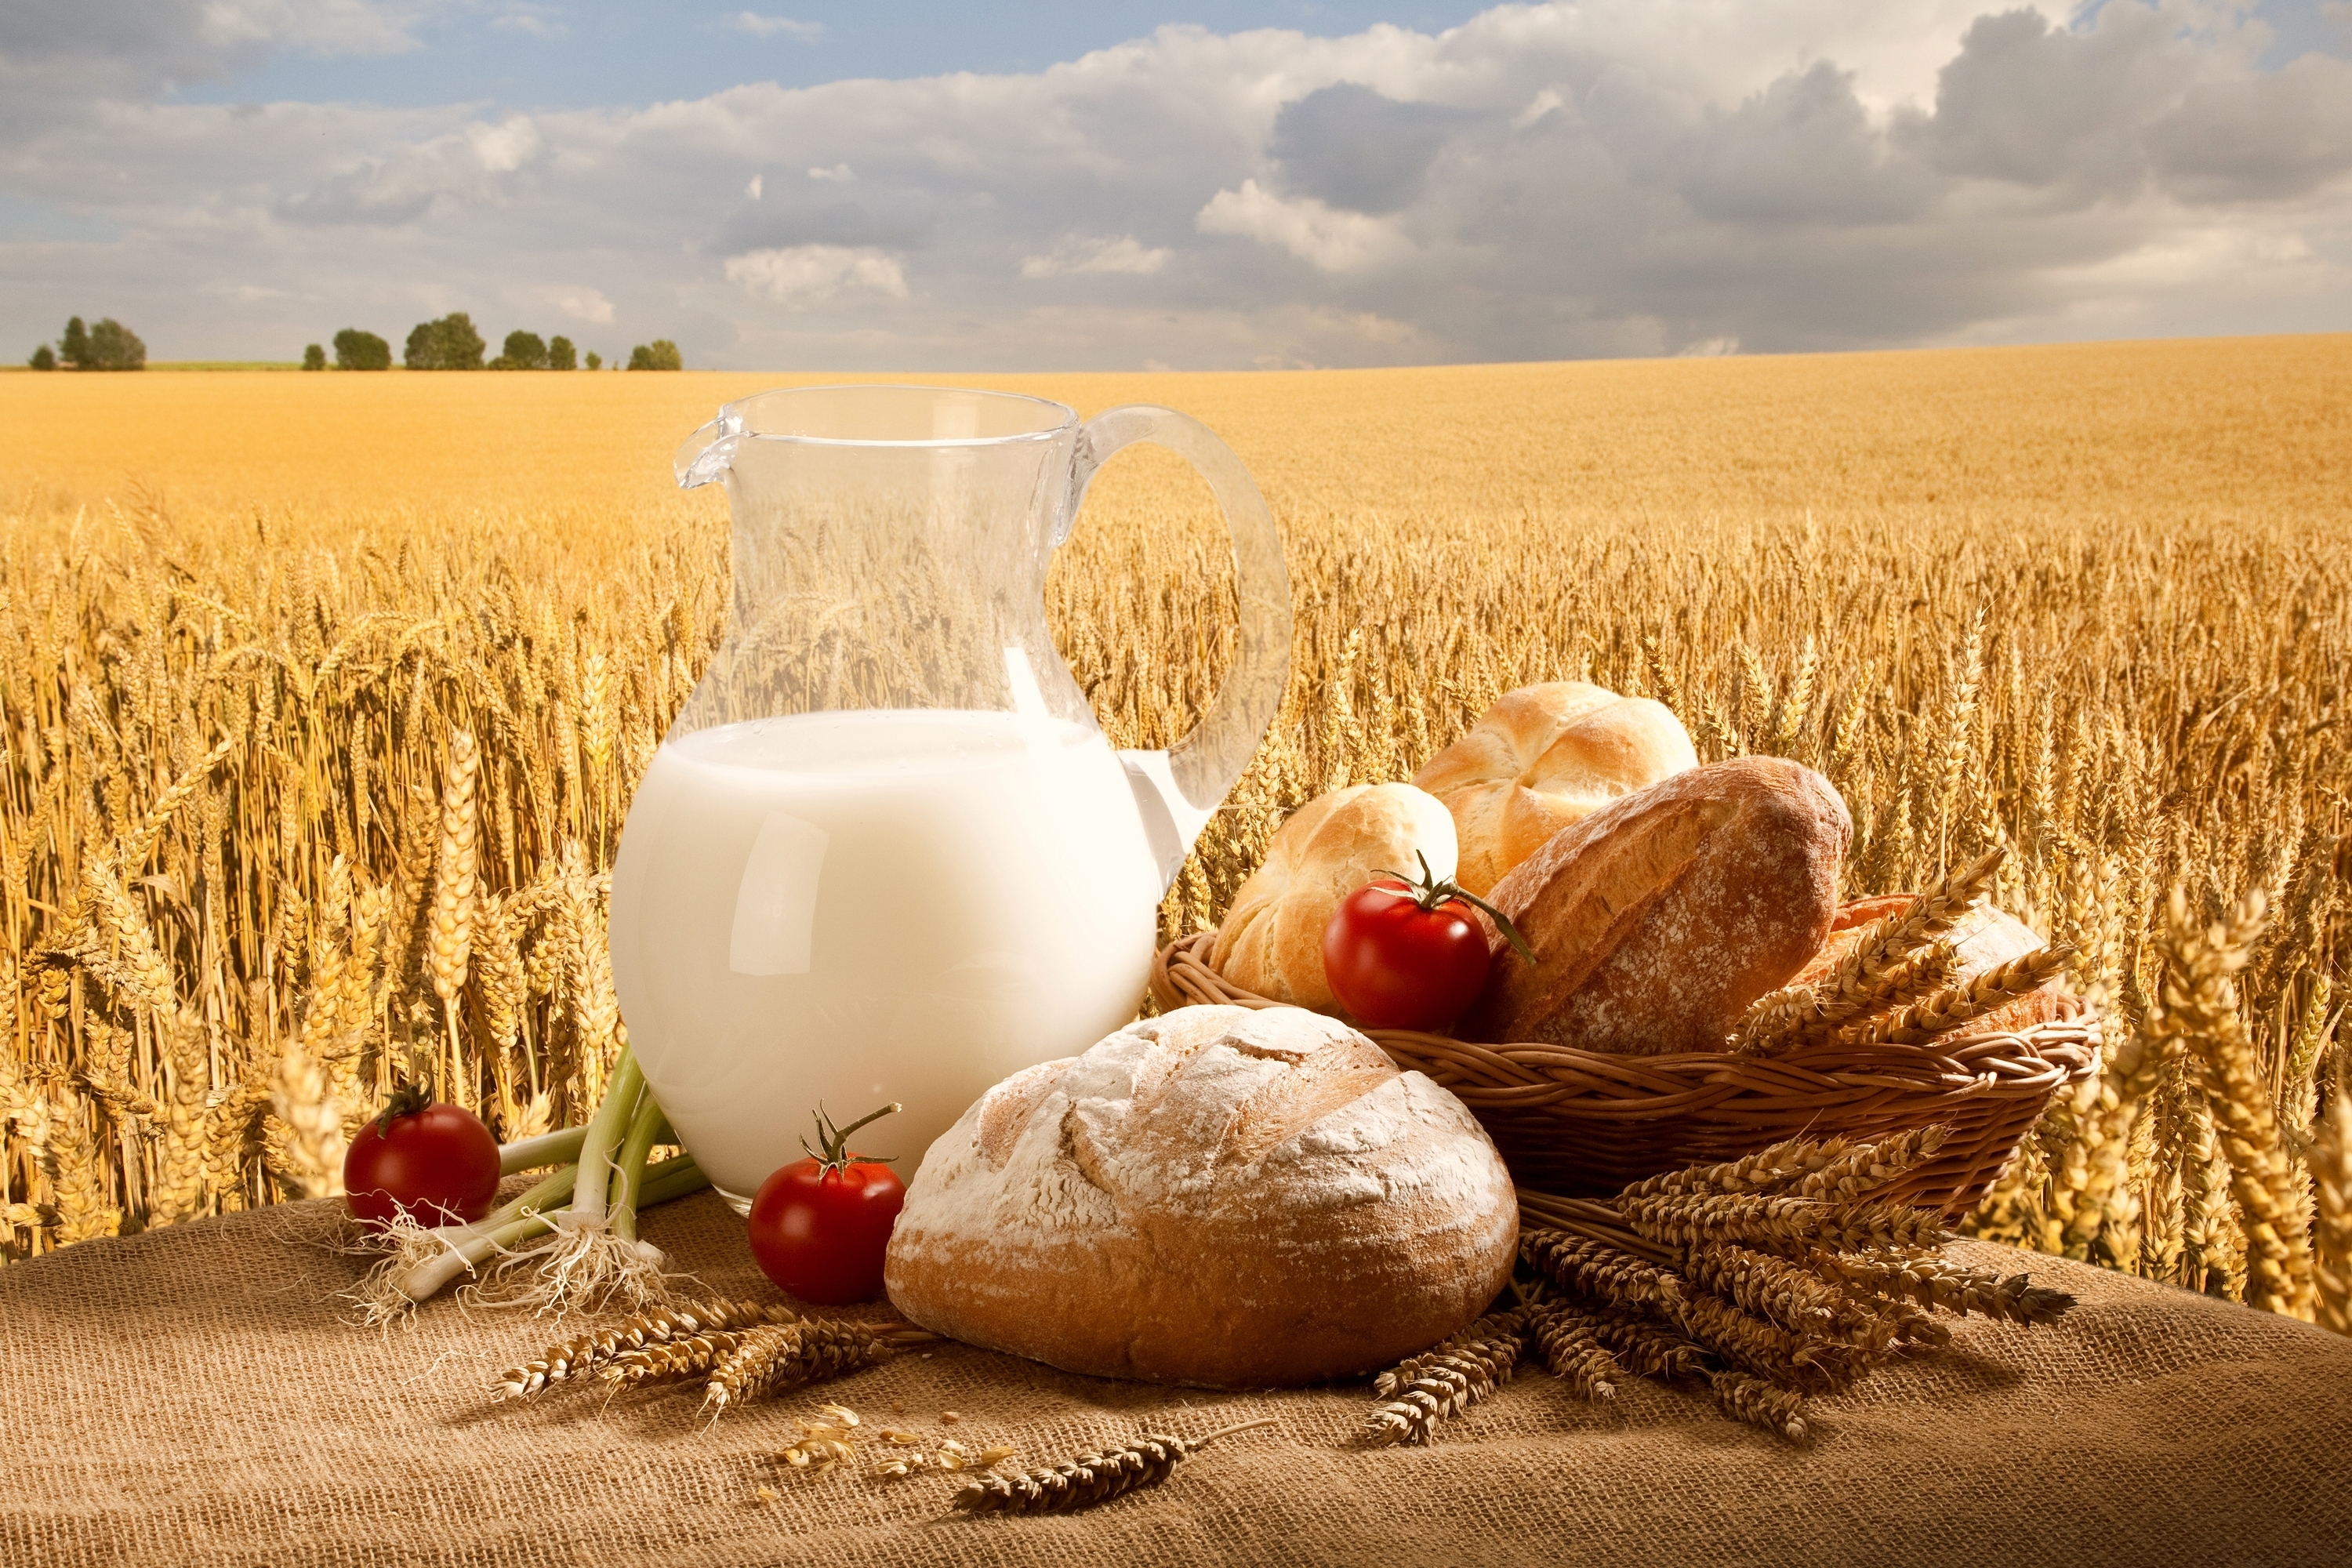 food, still life, basket, bread, field, onion, sky, tomato, wheat lock screen backgrounds